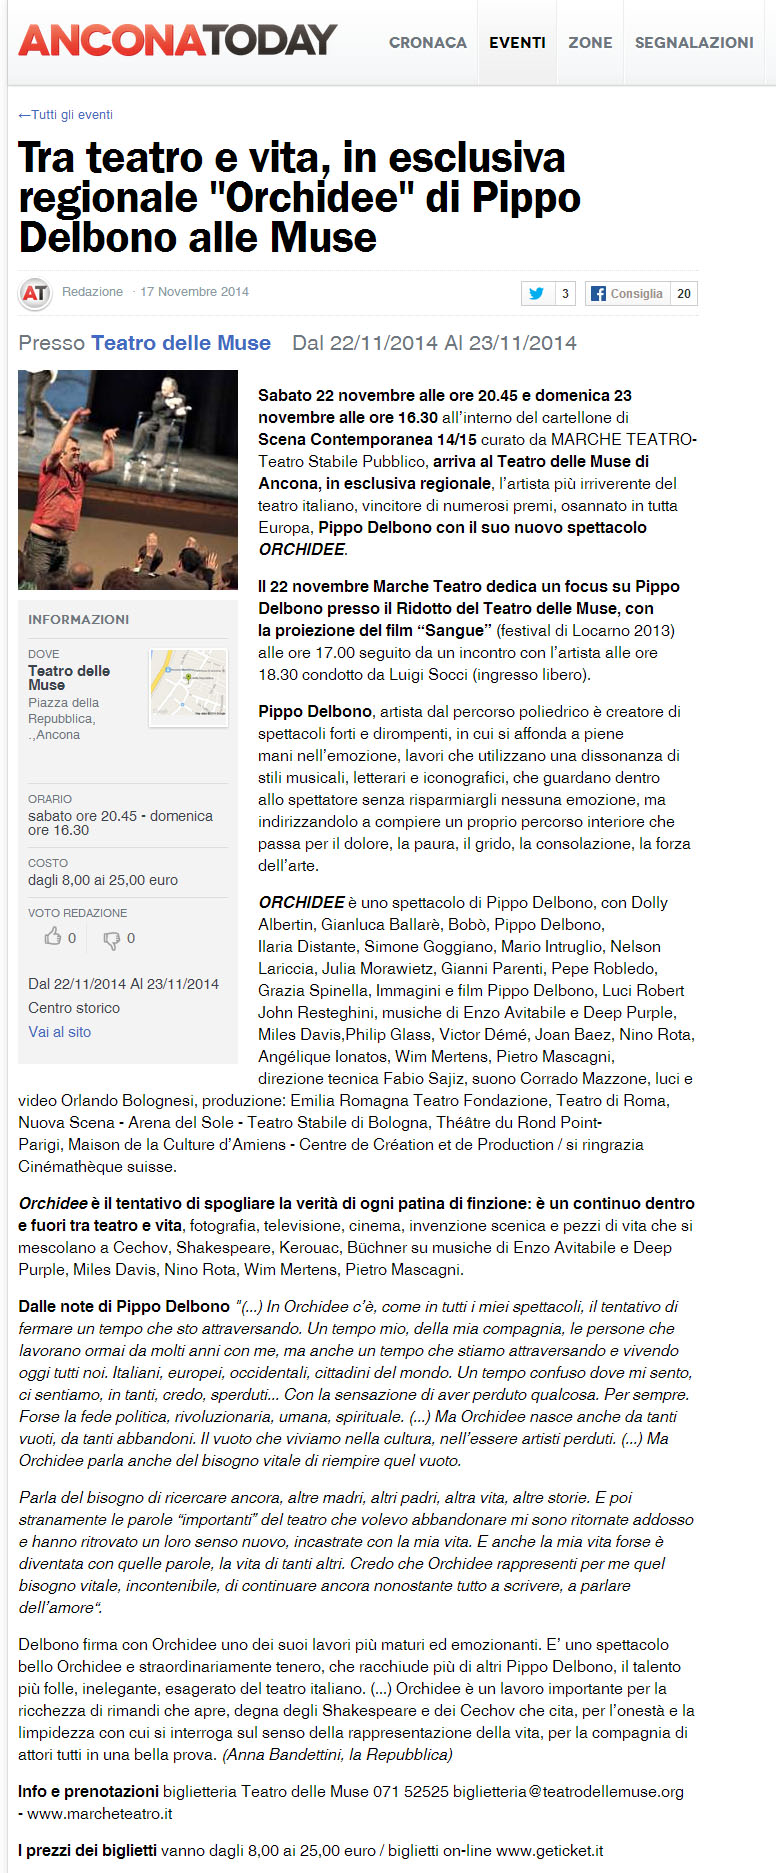 2014.11.17 Tra teatro e vita, in esclusiva regionale orchidee - anconatoday.it